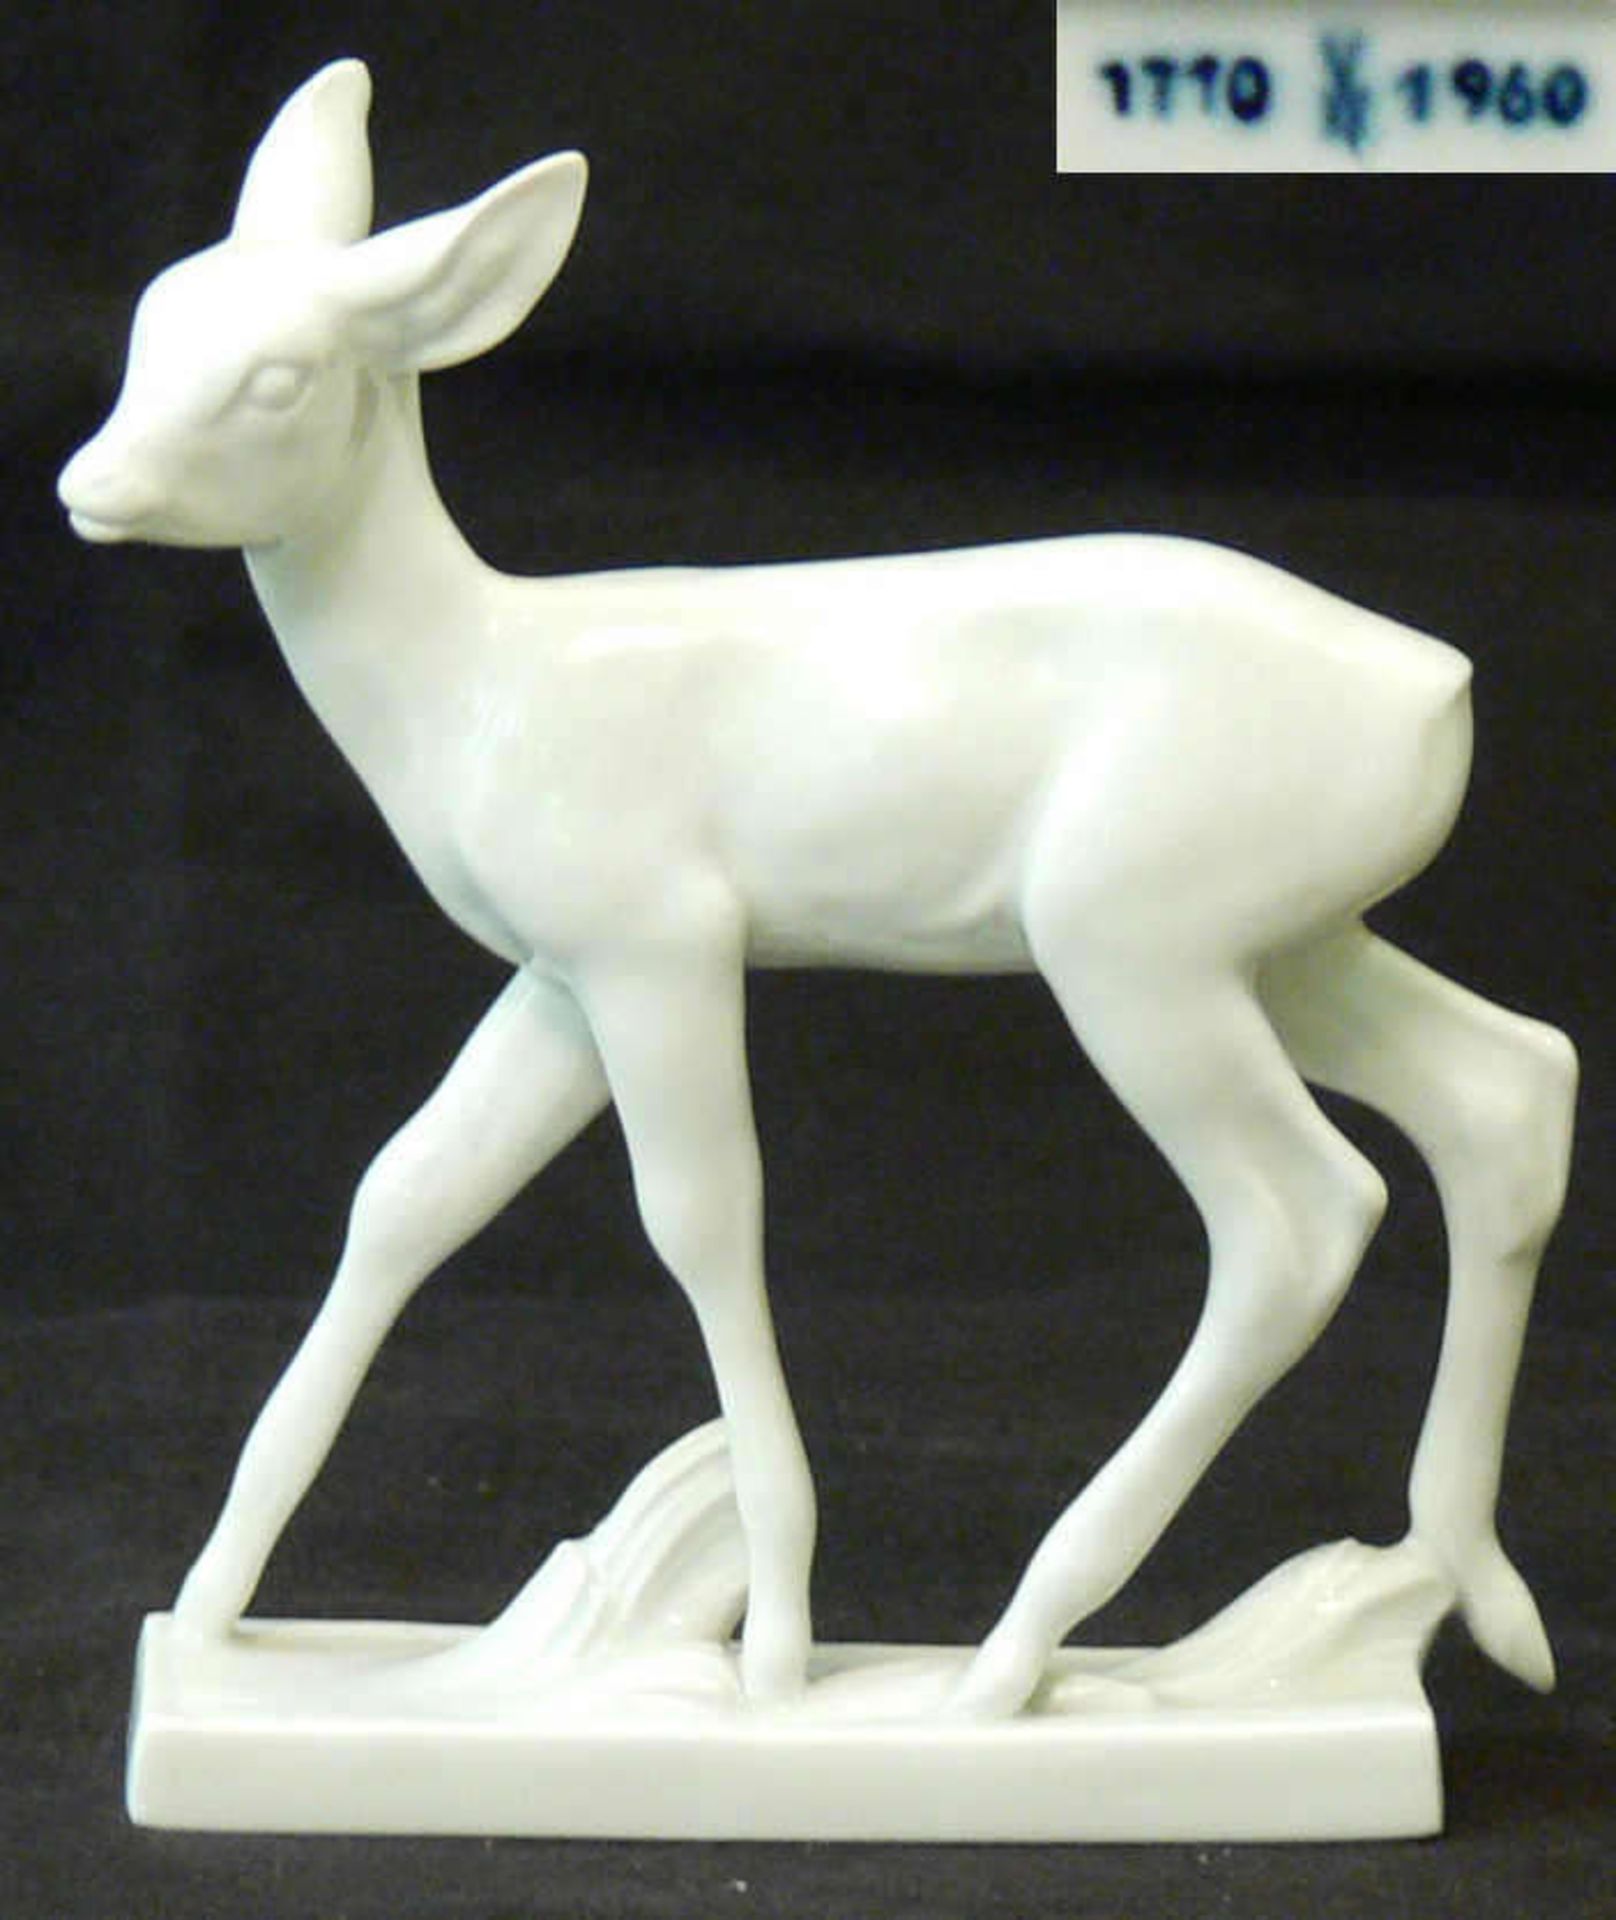 Meissen Porzellanfigur "Reh", Künstler Willy Münch-Khe, Höhe ca. 12,5 cm. Spannungsriss am